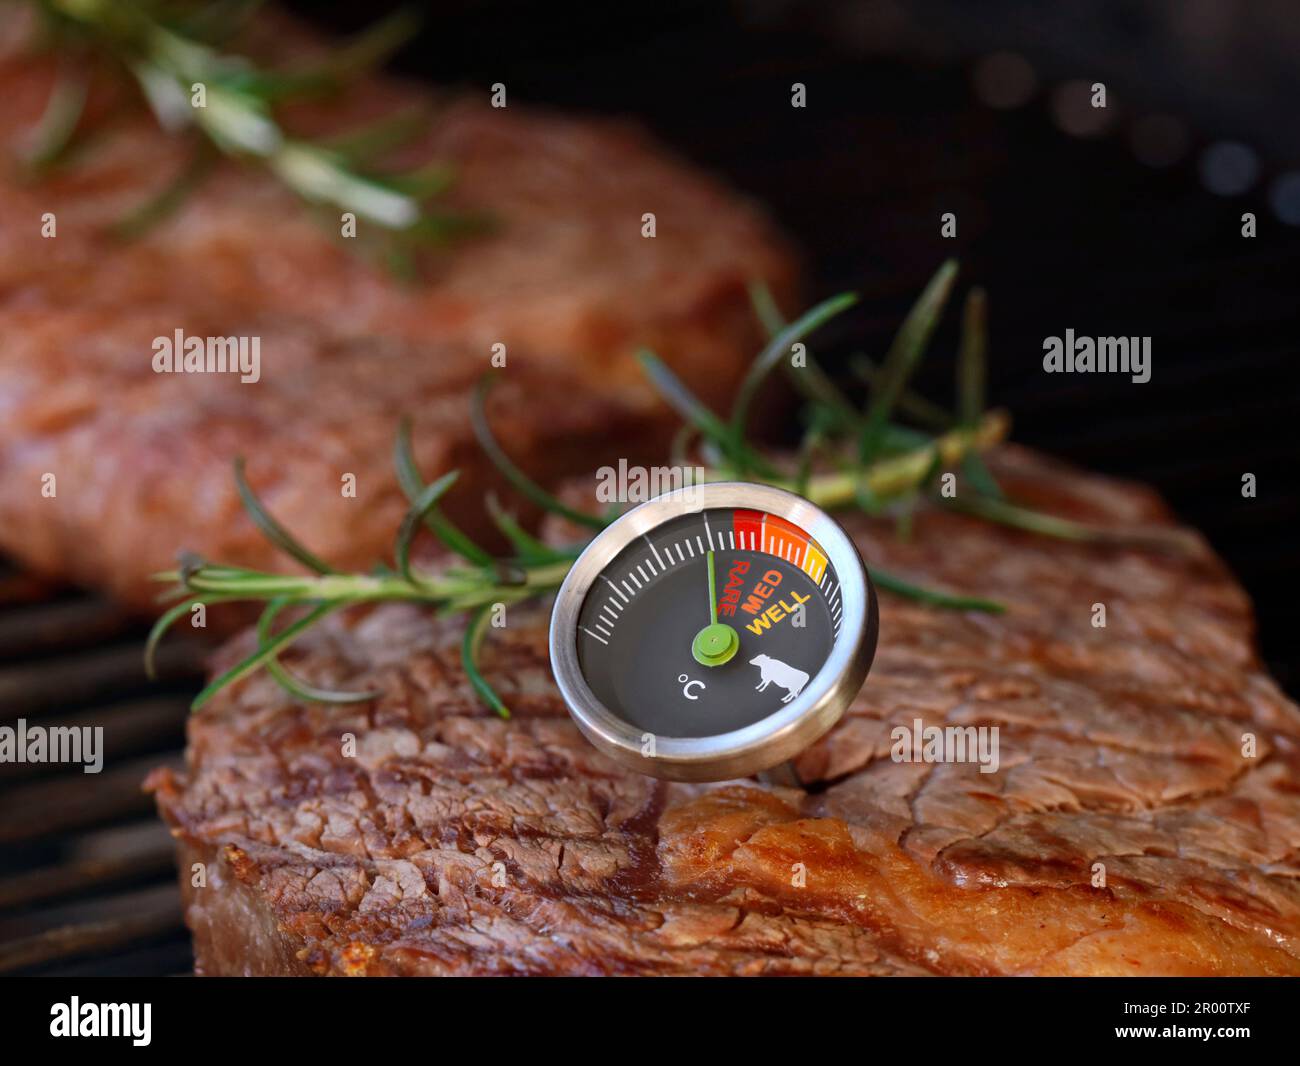 délicieux steak de boeuf sur grille avec un thermomètre à viande montrant la donuité de rare, moyen et bien fait Banque D'Images